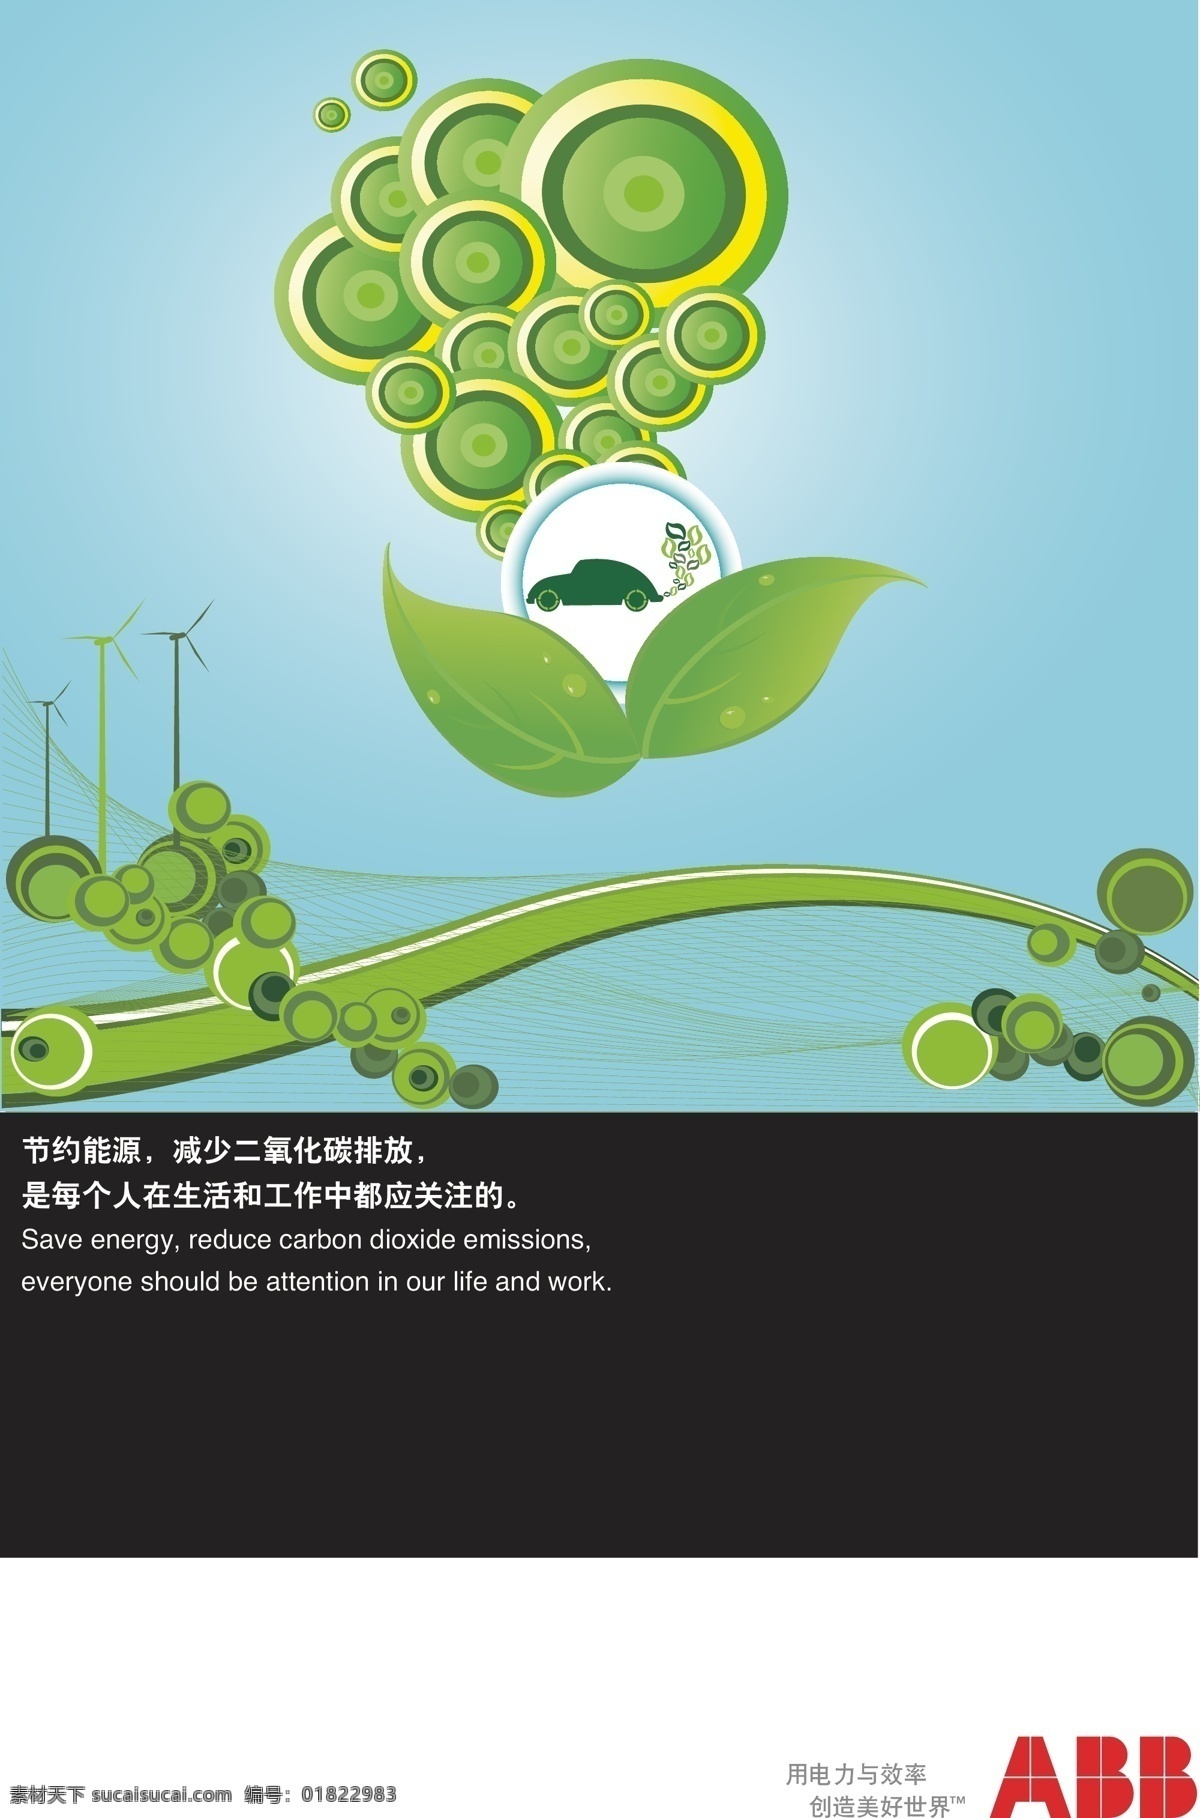 环保 简单 节能 绿色 树叶 abb 节能环保 海报 矢量 模板下载 环保公益海报